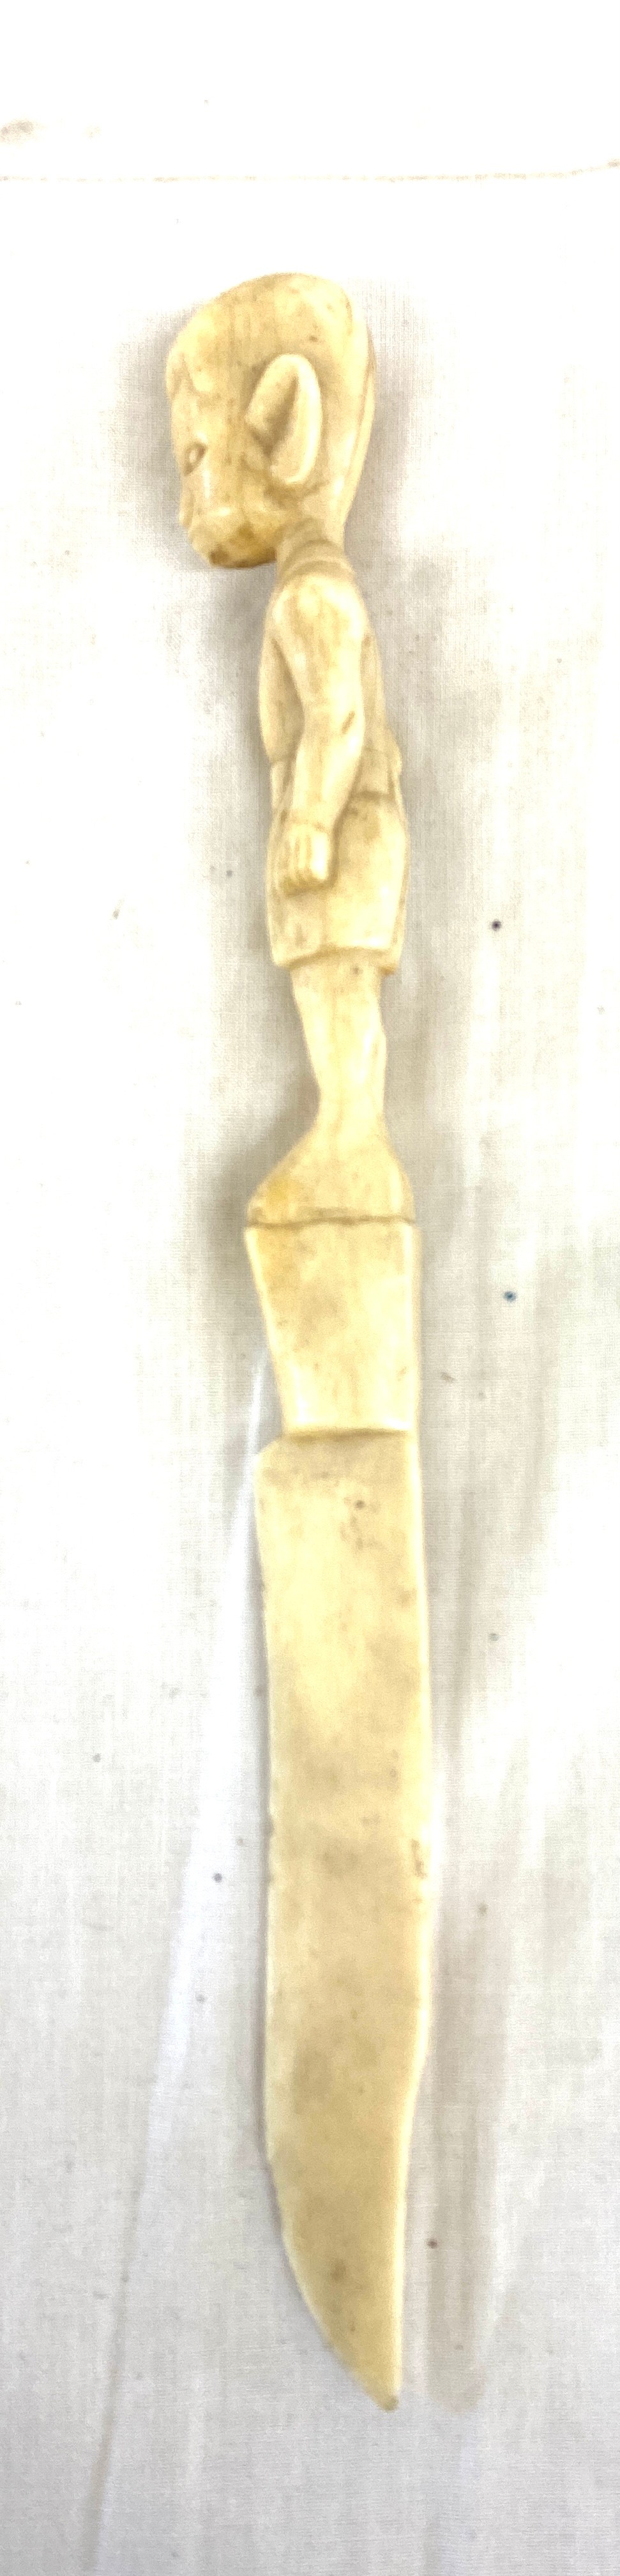 Vintage carved letter opener 11" long - Image 3 of 3